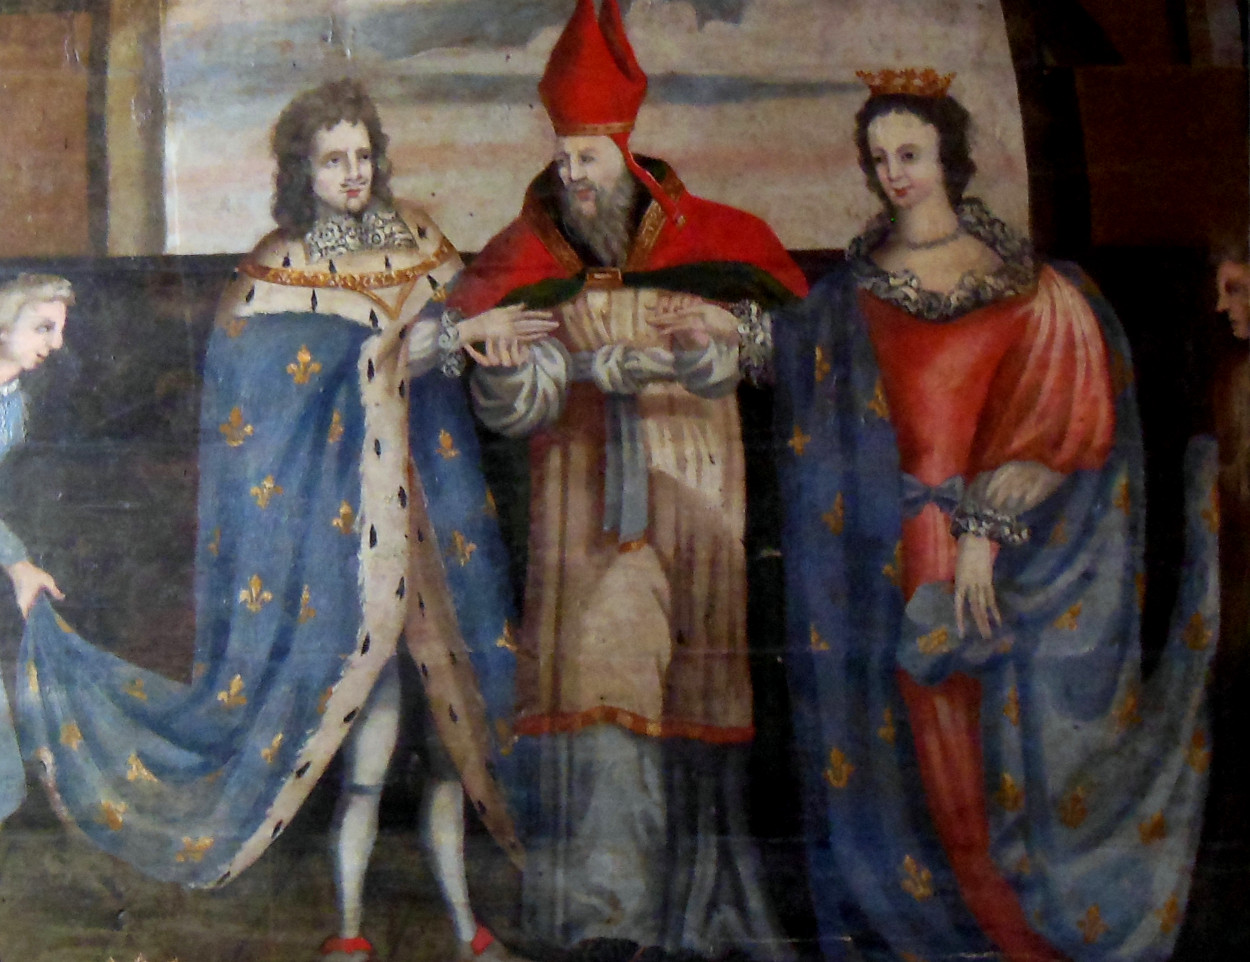 Mariage de Jean IV avec Jeanne de Navarre en l'église de Saint-Clair de Saillé (Loire-Atlantique). Wikicommons.